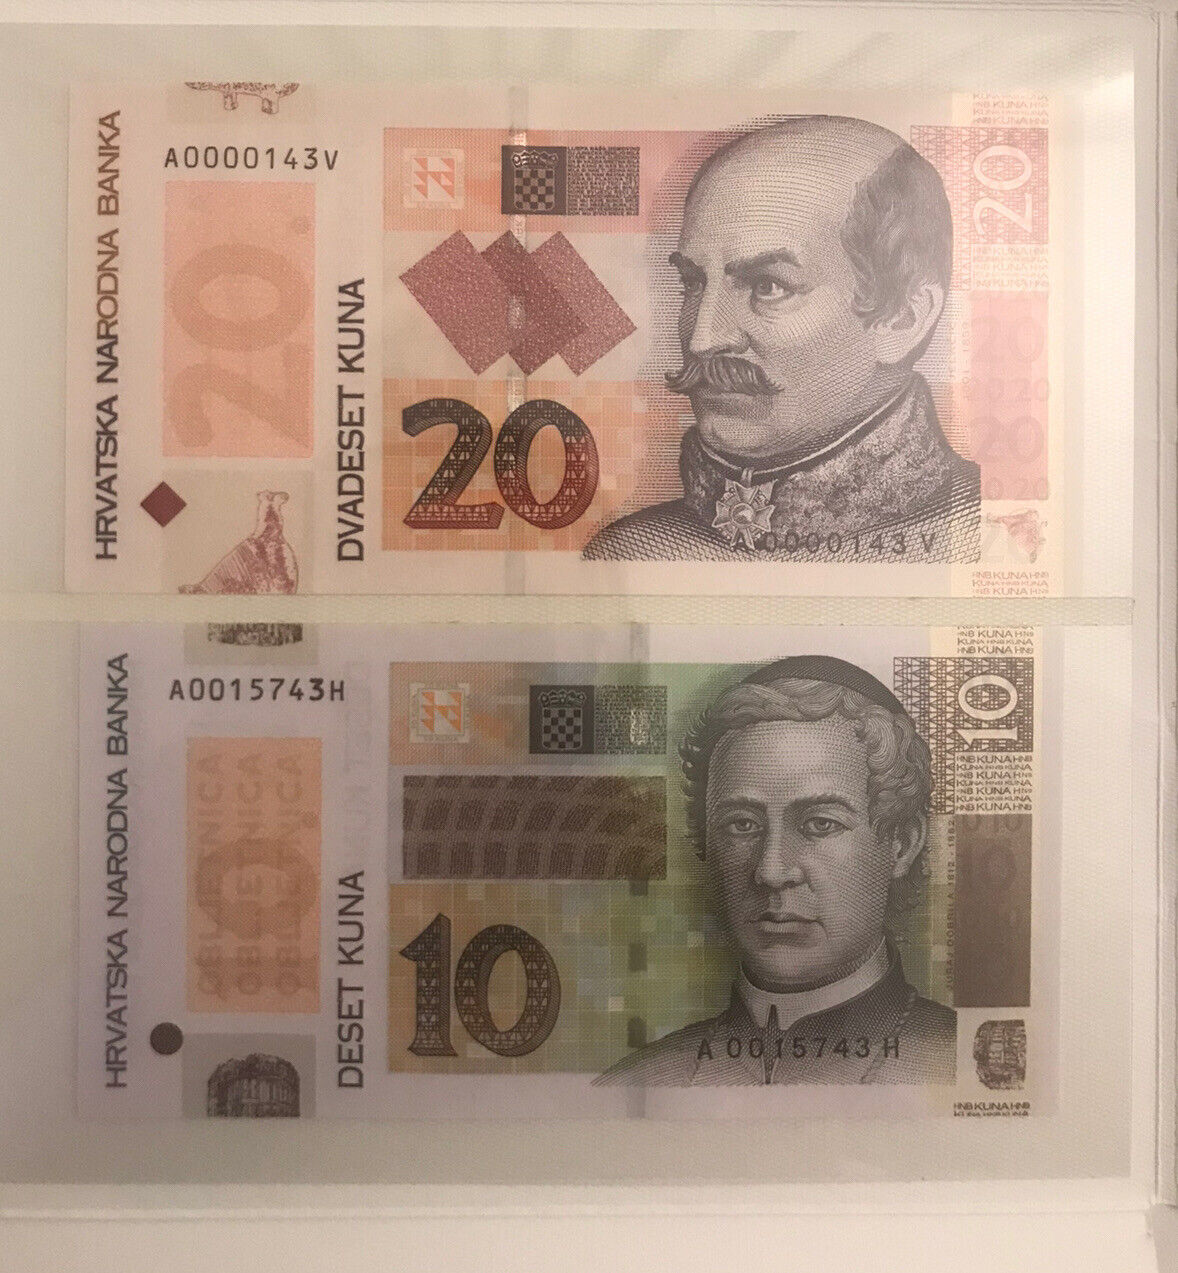 Croatia 10 - 20 Kuna 2 Pcs Banknote Set 2004 & 2014 Unc Commemorative